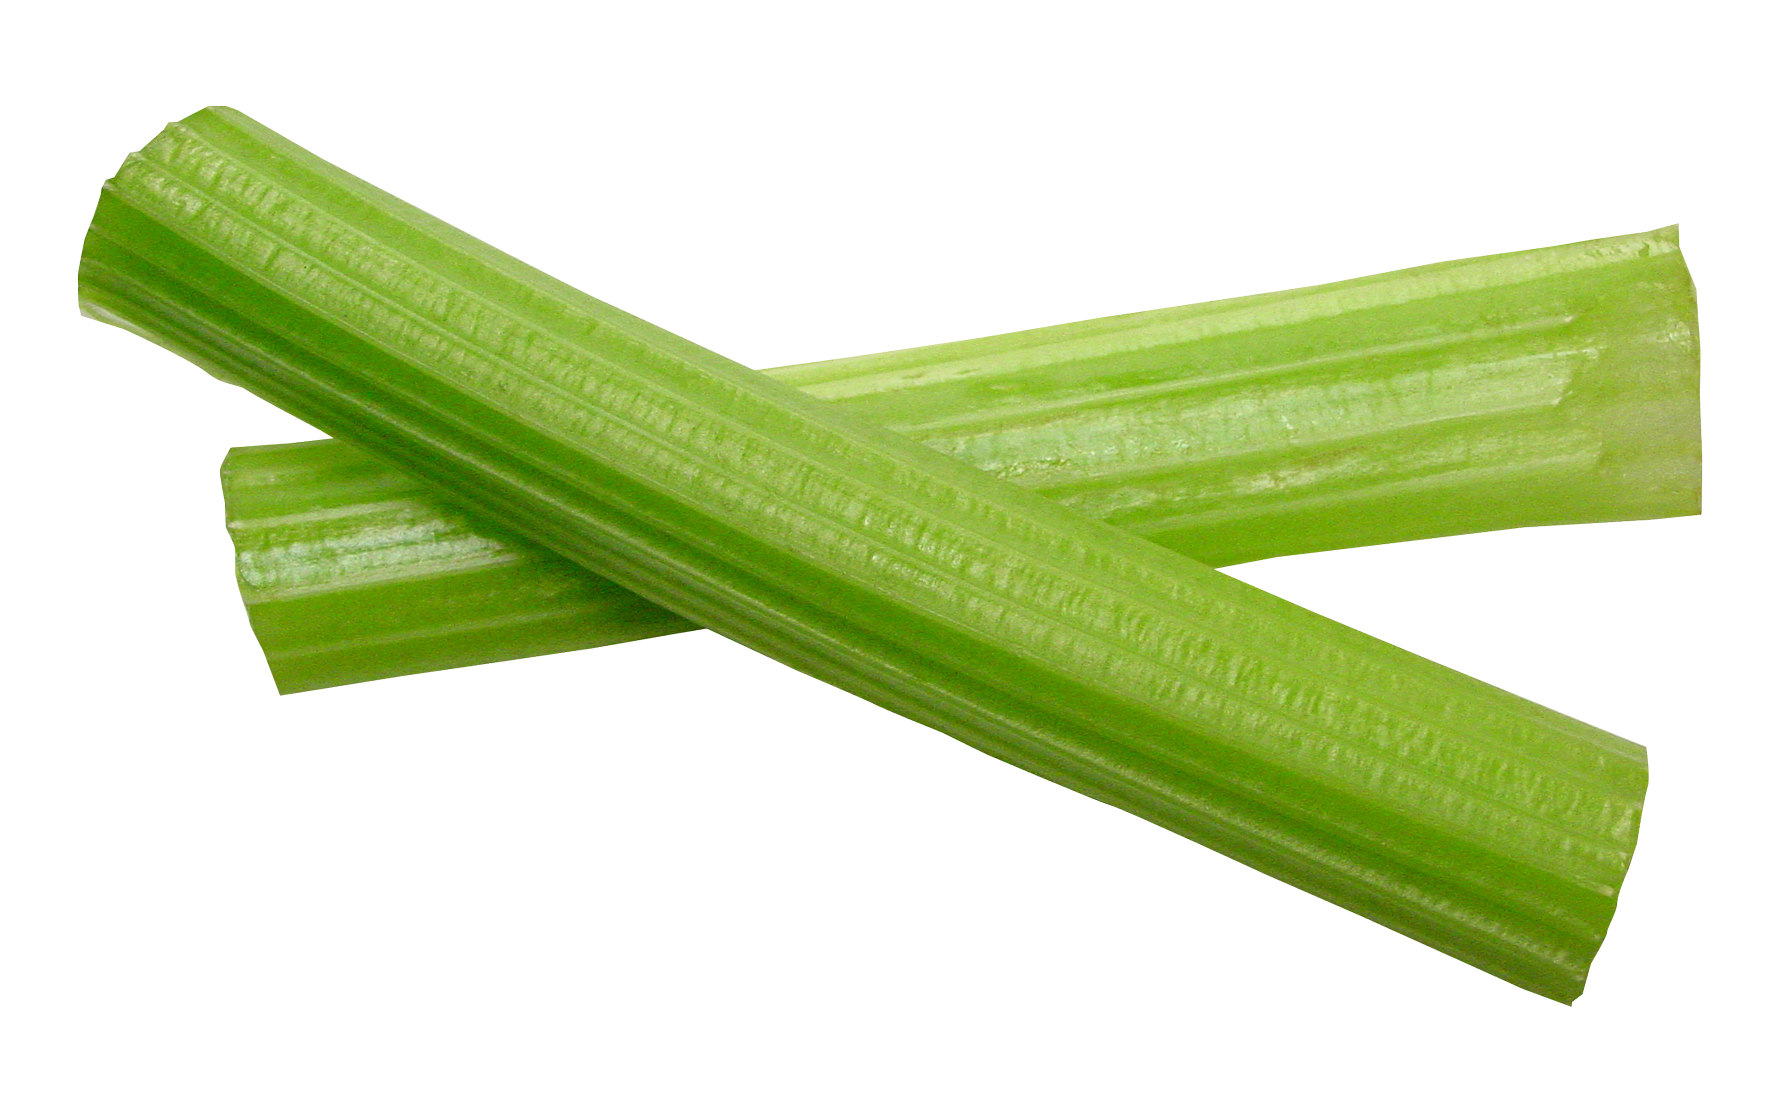 A Close Up Of Celery Sticks